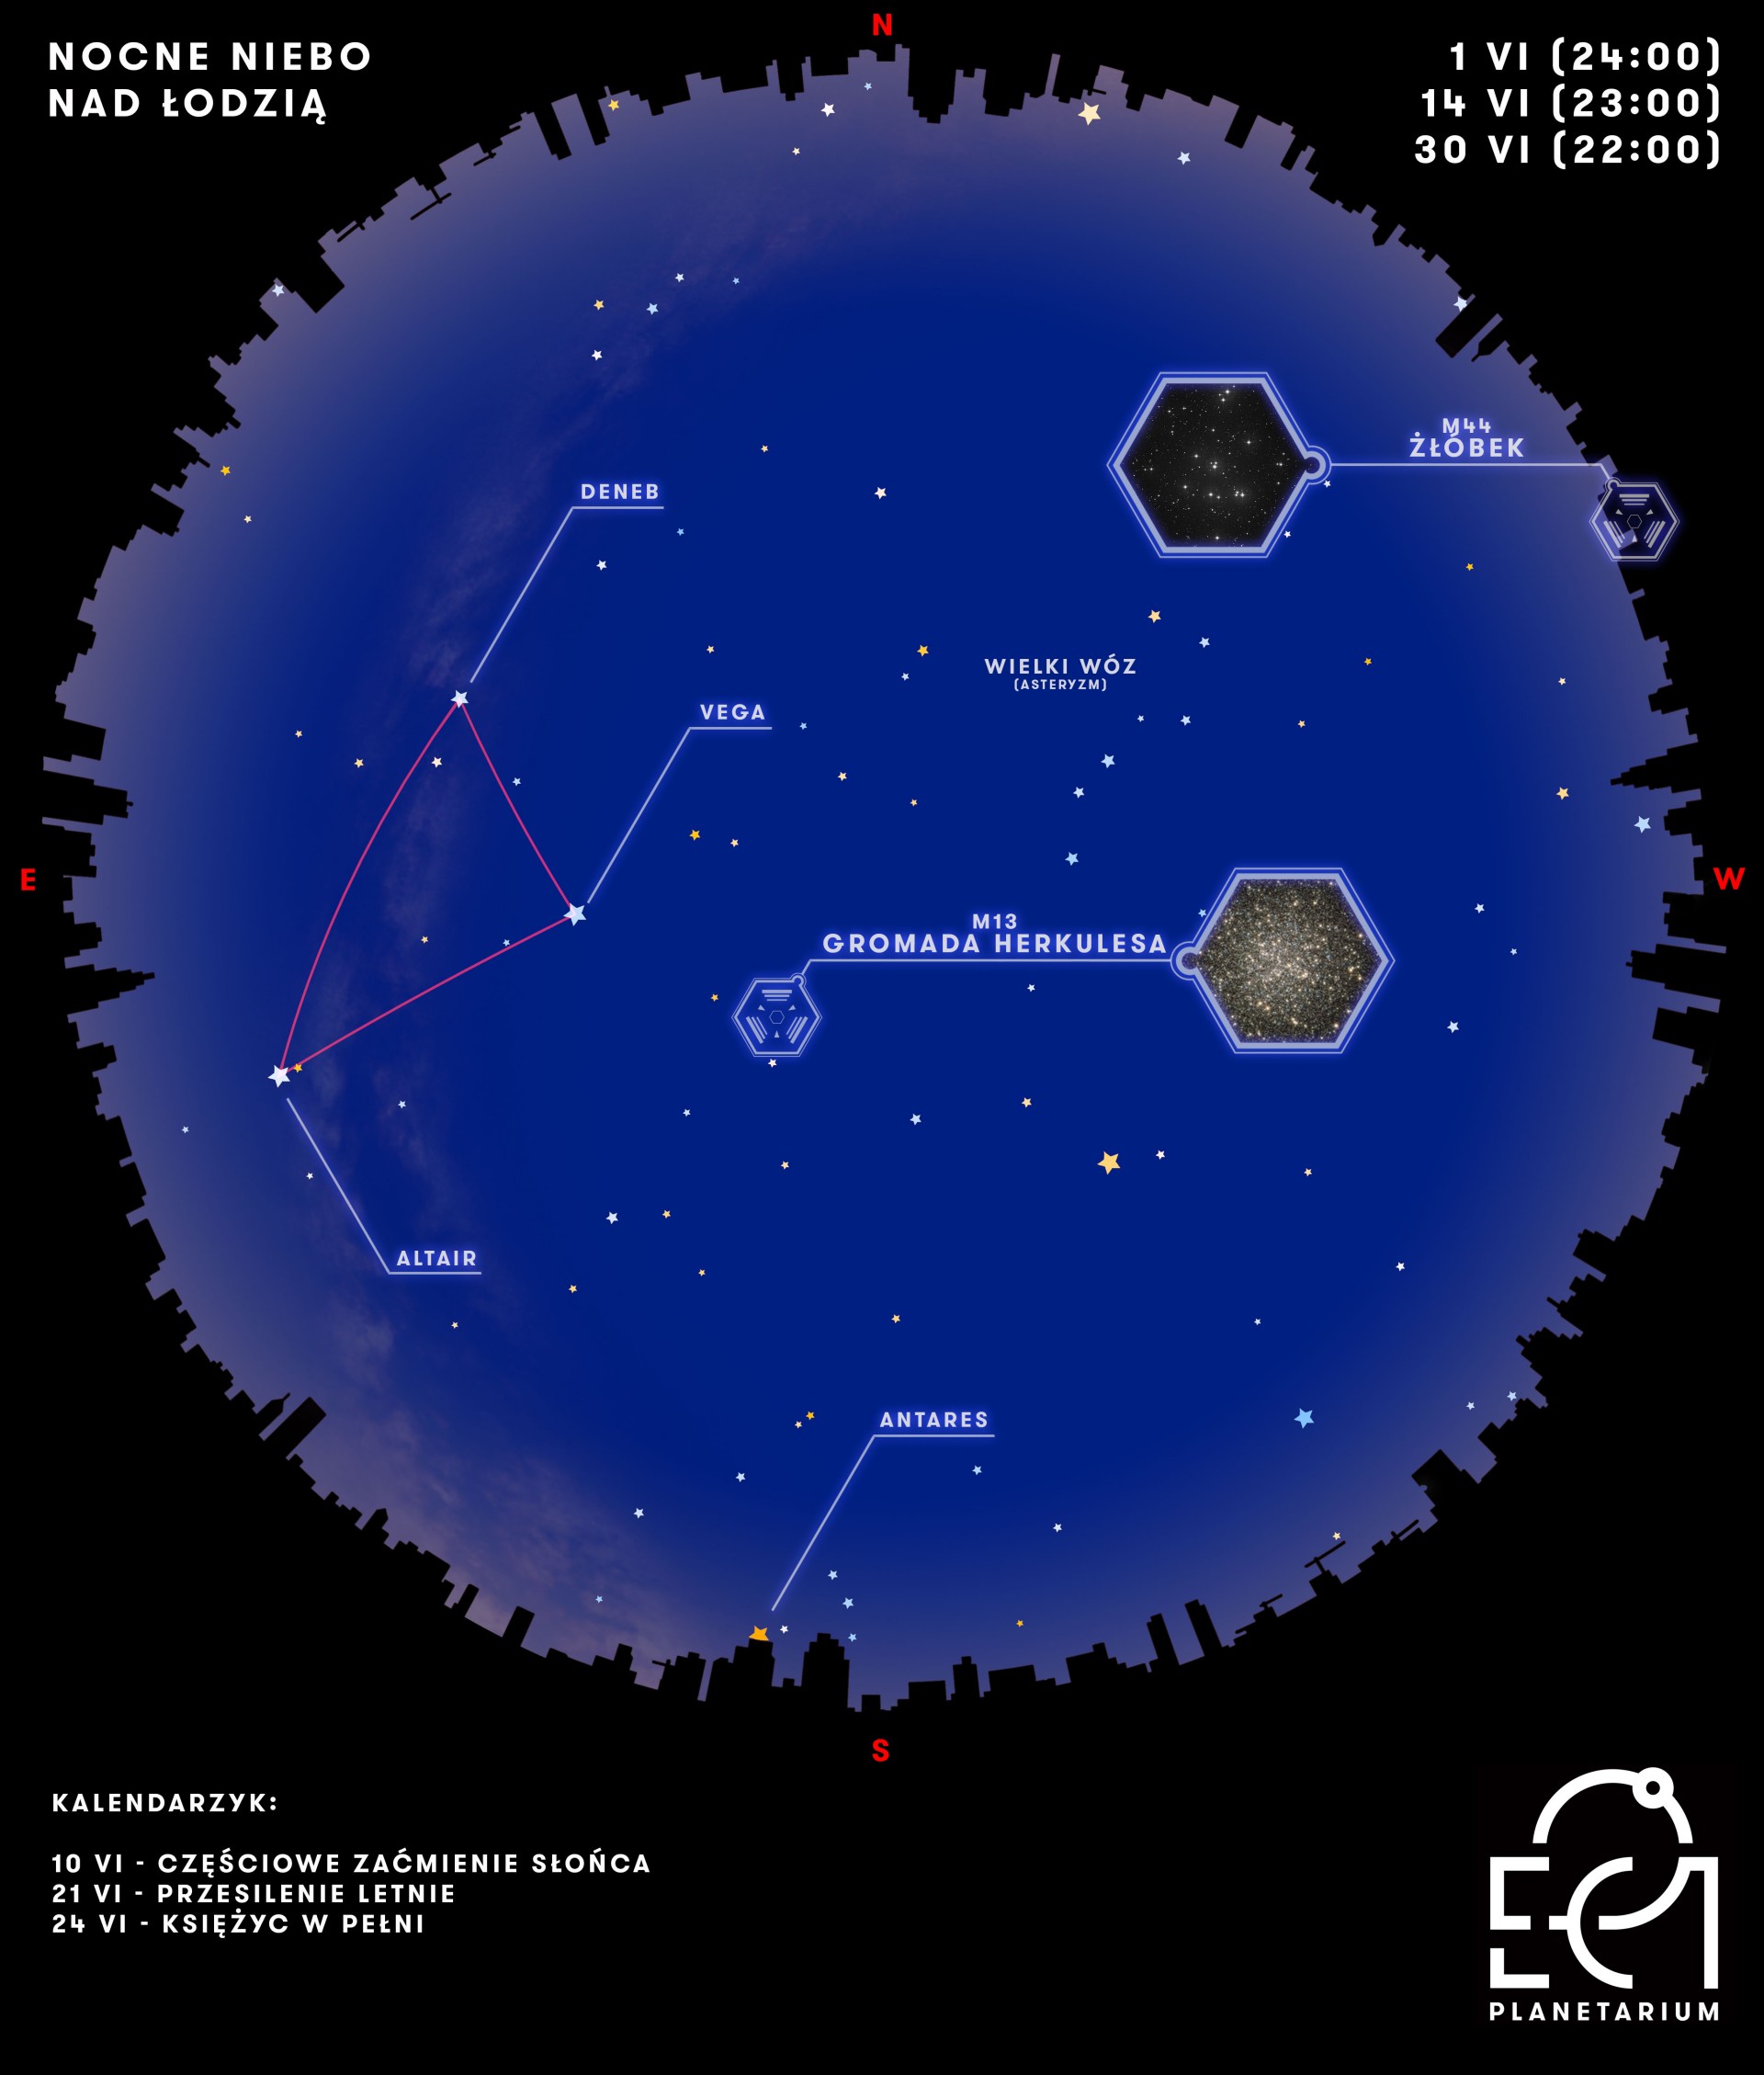 Mapa nocnego nieba nad Łodzią - grafika z oznaczeniem obiektów opisywanych w artykule